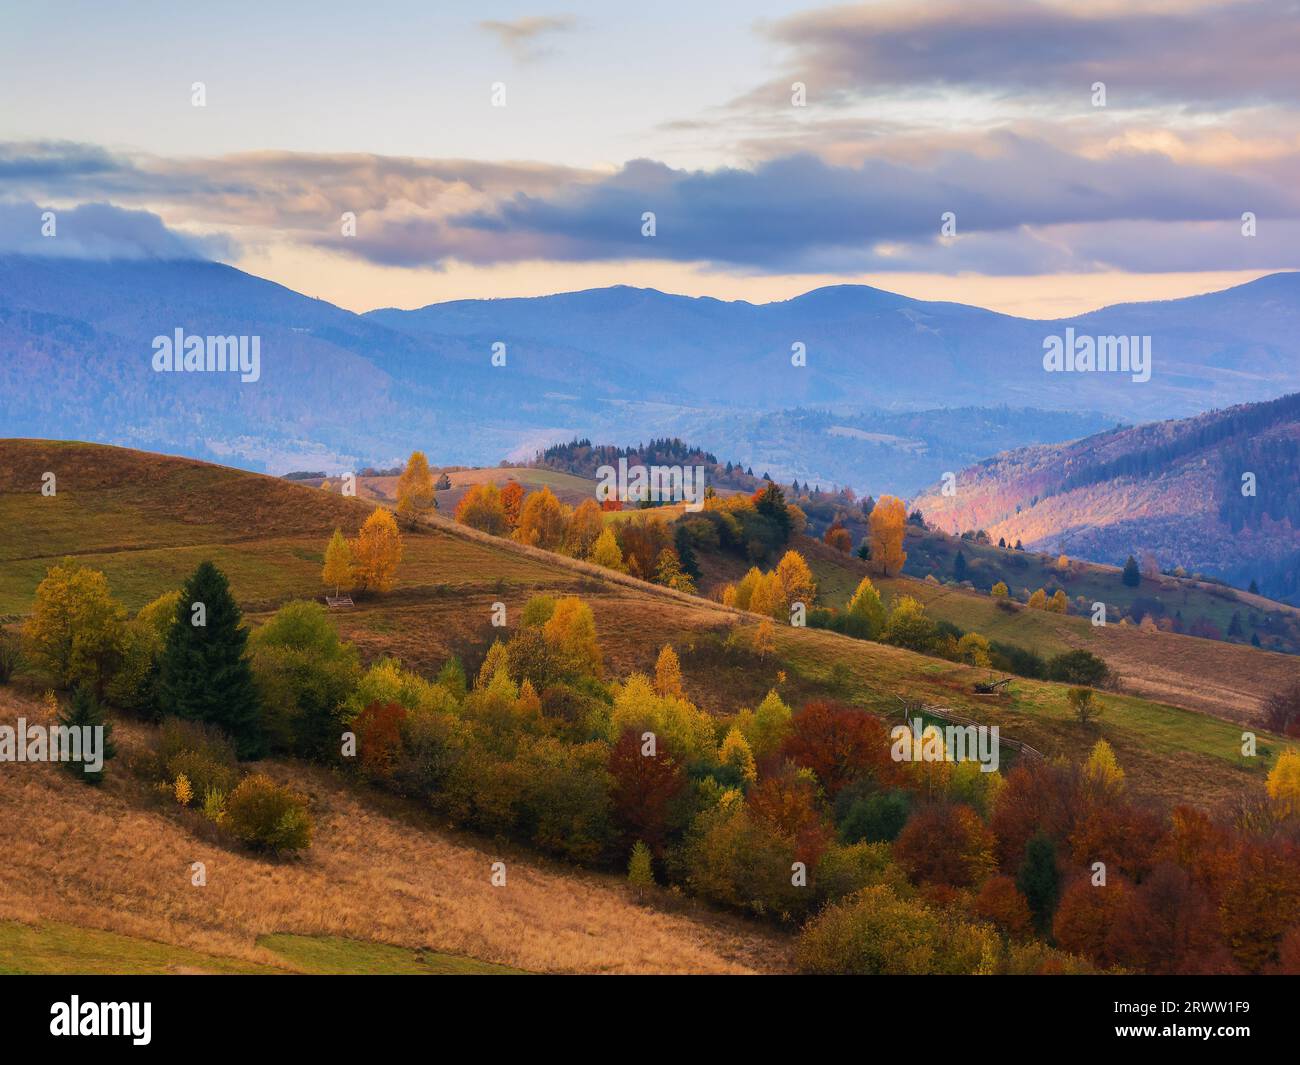 Bergige ländliche Landschaft bei Sonnenaufgang. Landschaft im Herbst im Morgenlicht. Bäume in buntem Laub auf den sanften Hügeln Stockfoto